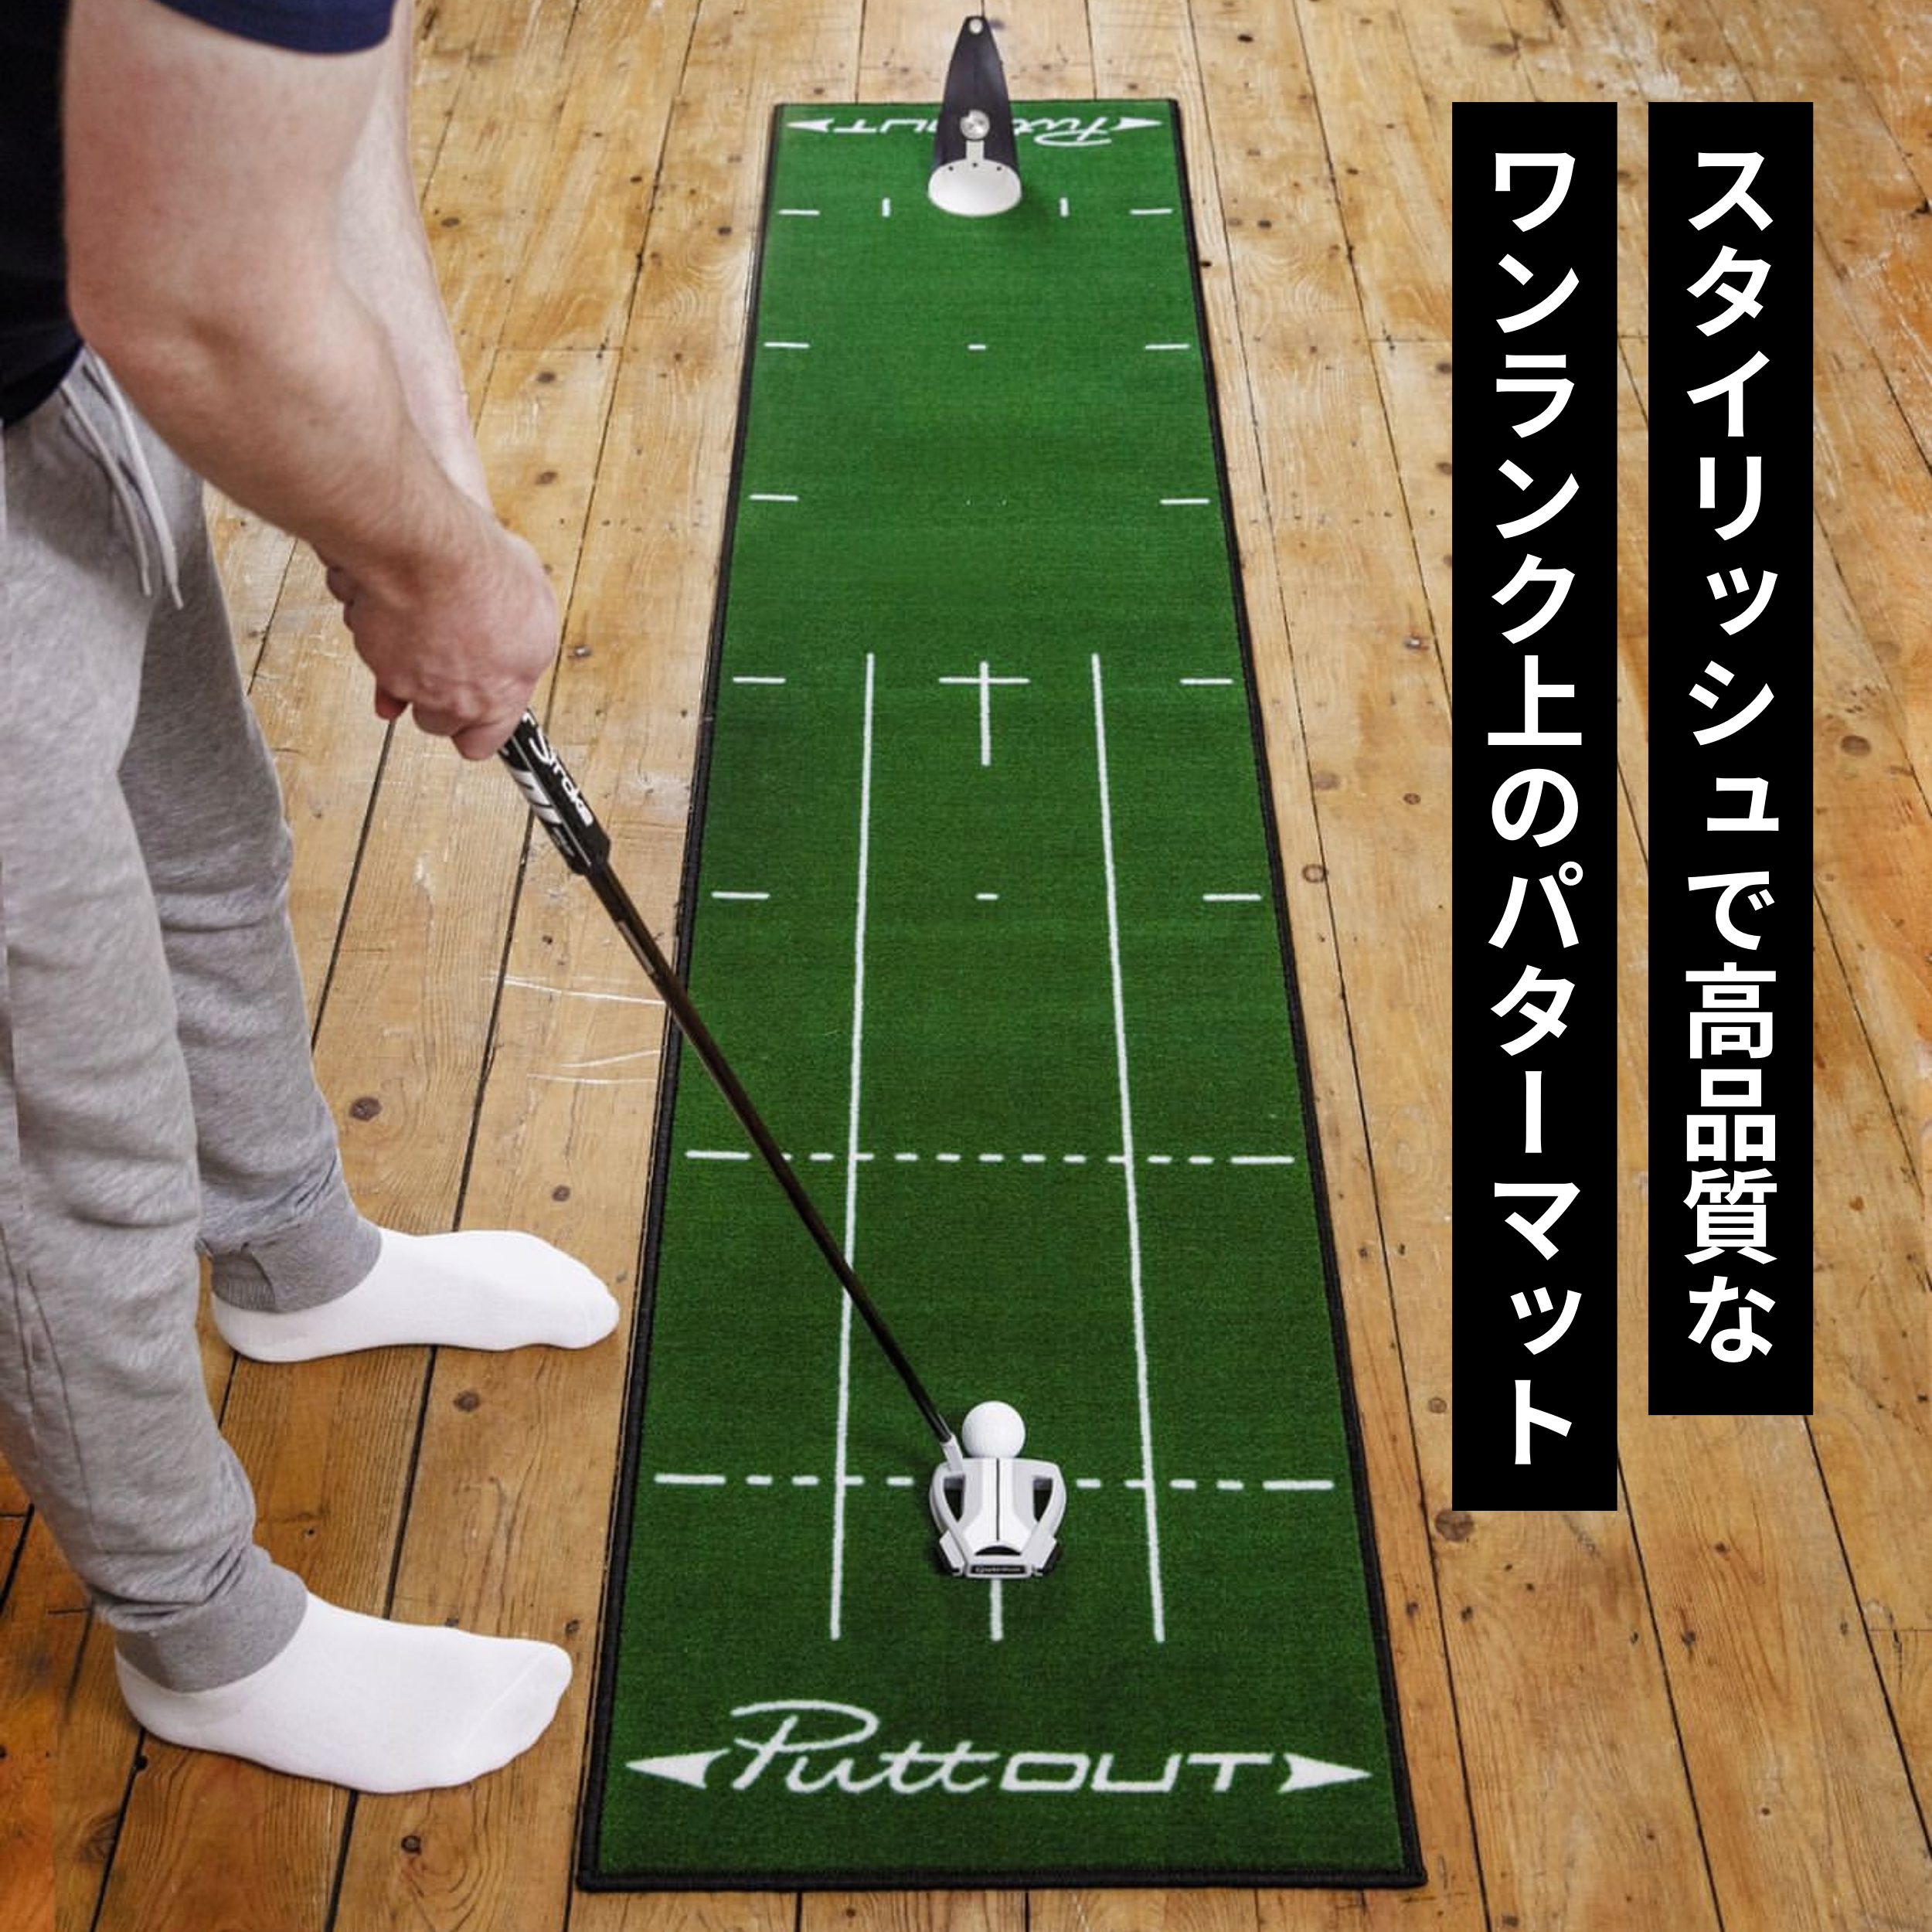 PuttOut ゴルフパッティングマット 大型 144インチ X 26.4インチ